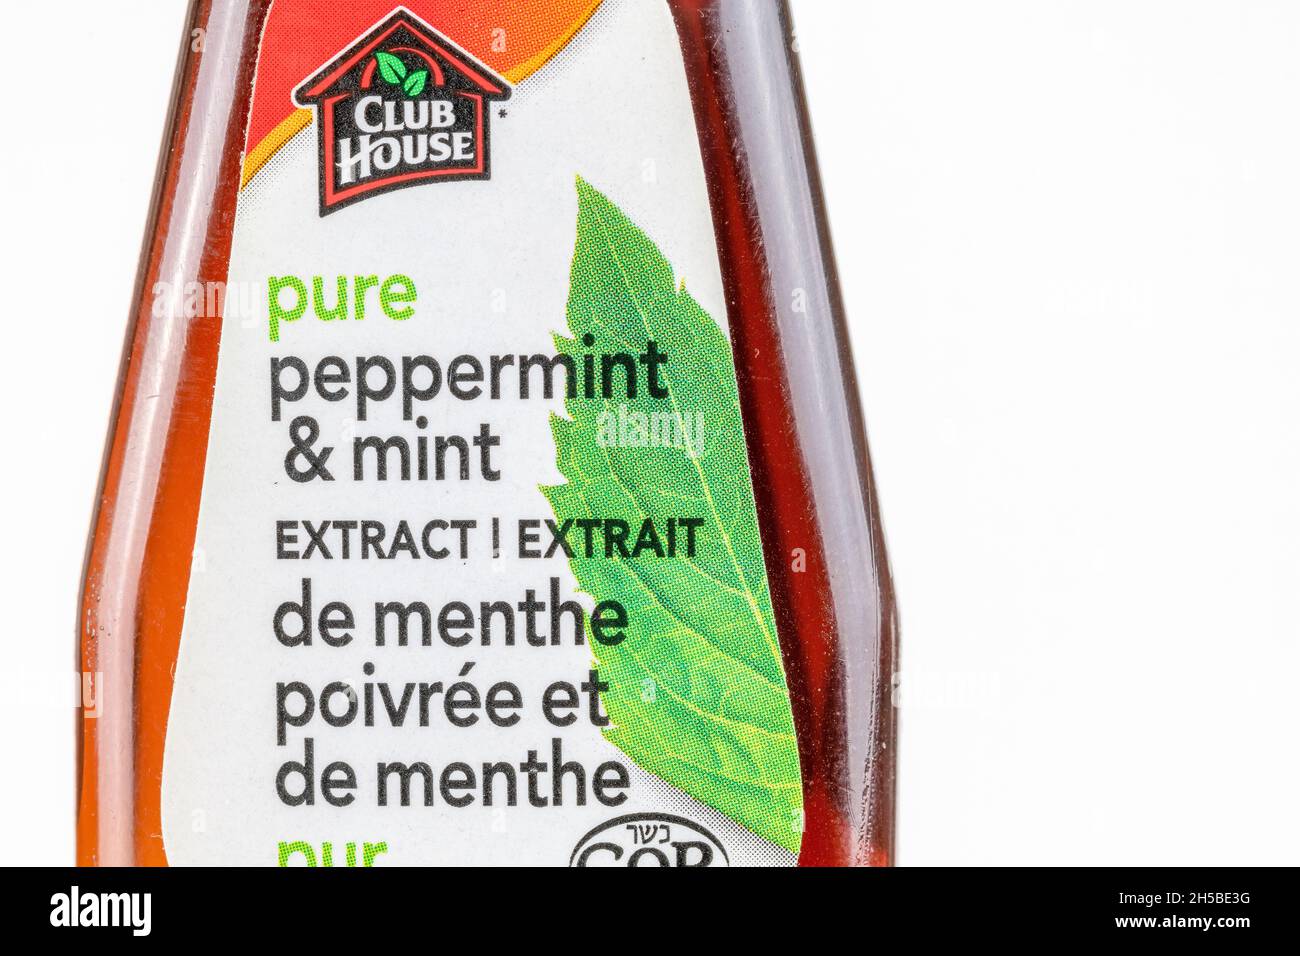 Étiquette en bouteille de marque Club House pure menthe poivrée et ingrédient de menthe.7 novembre 2021 Banque D'Images